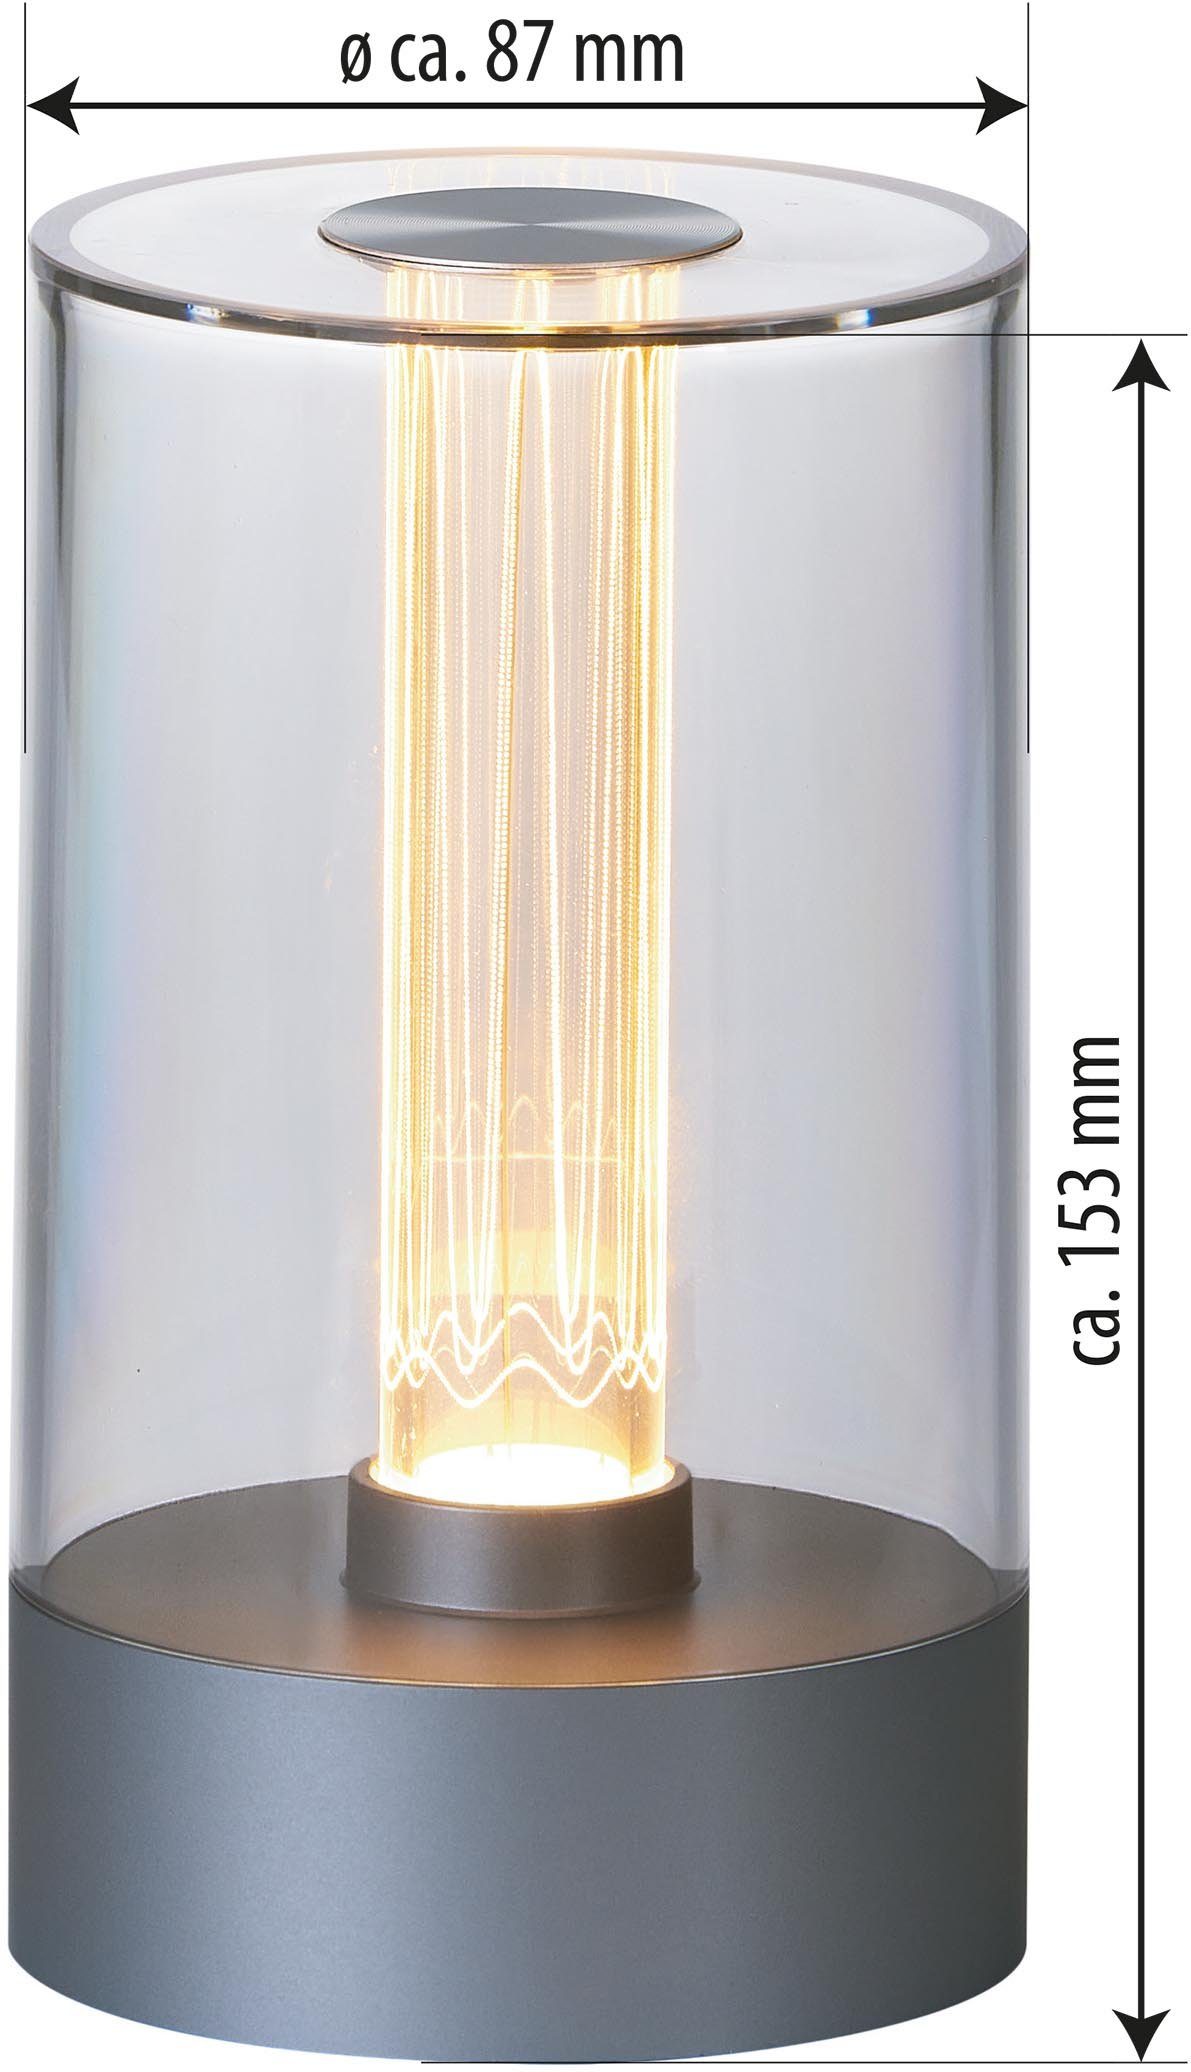 LED mit Design Tischlampe Akku LED aufladbarer Northpoint Akku Nachttischlampe Grau Tischleuchte Glühdraht